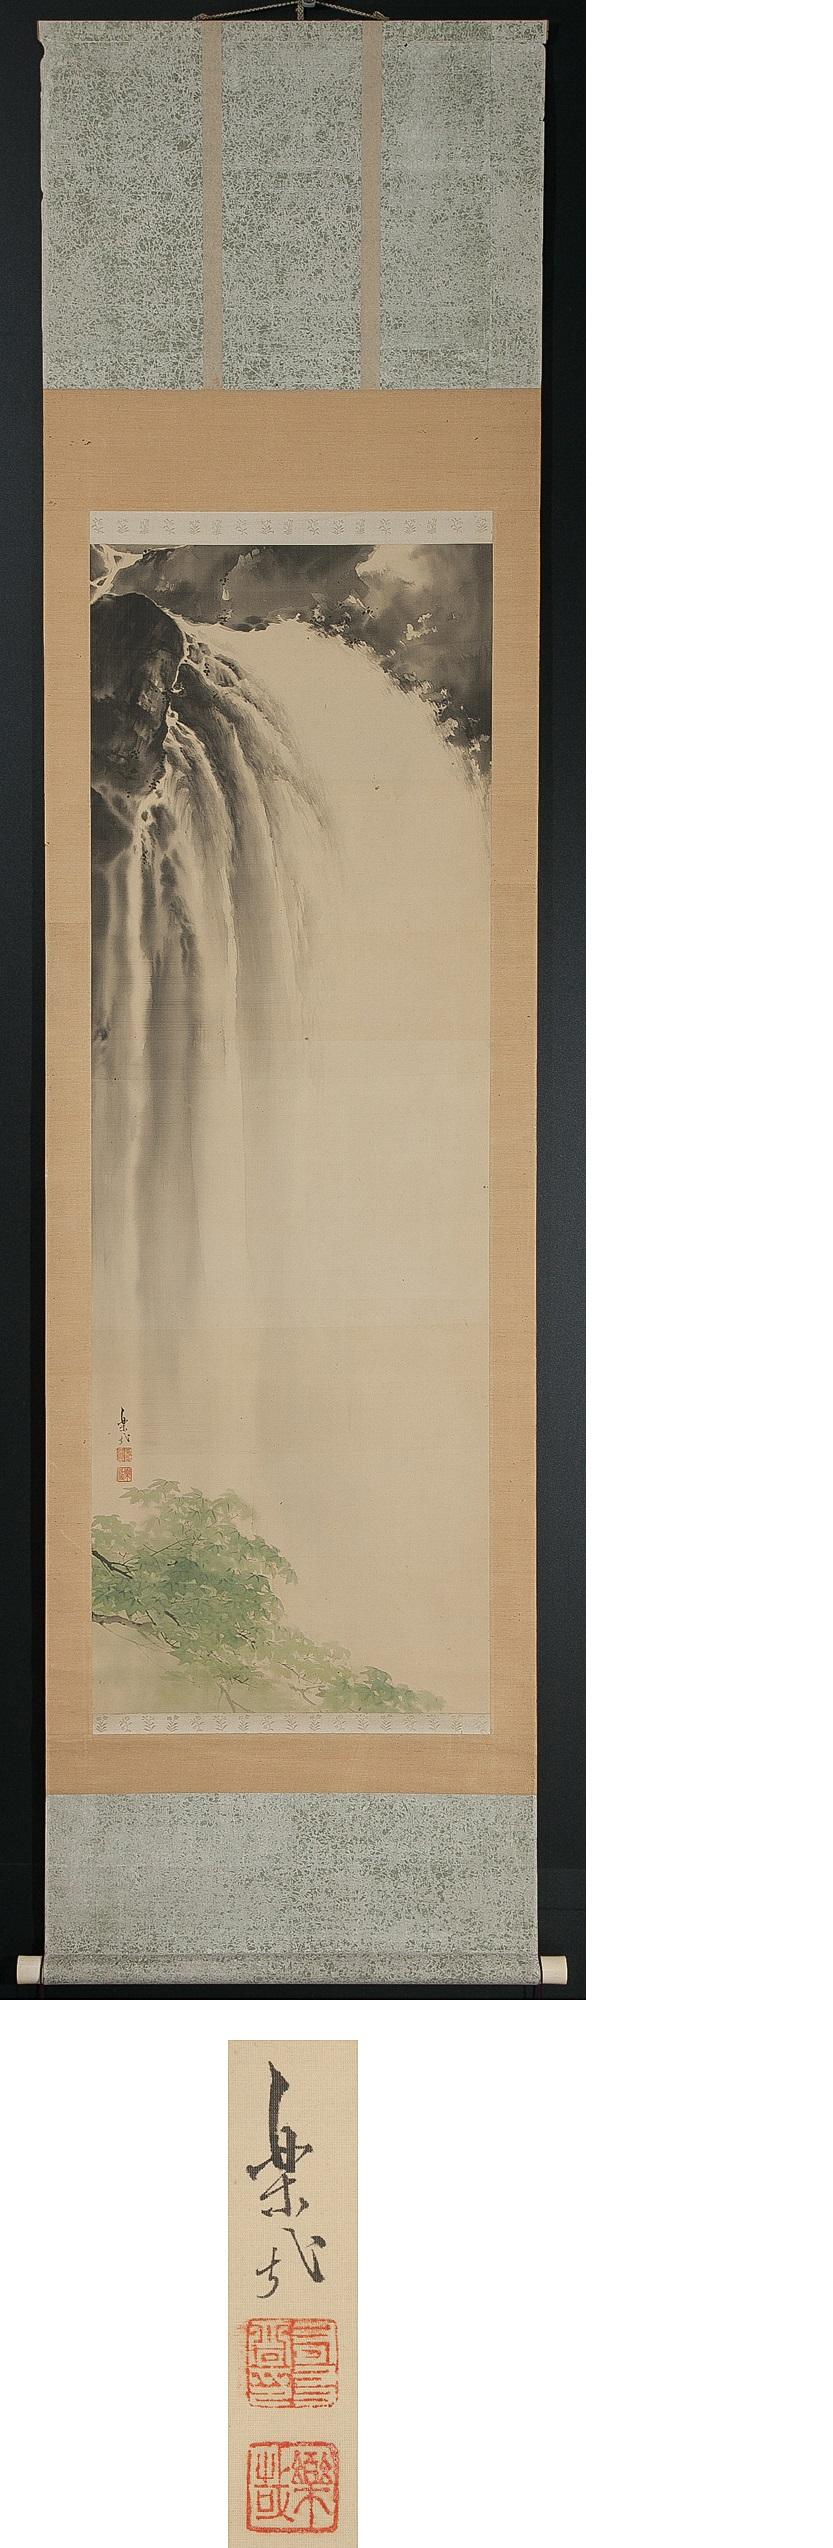 Silk Lovely Meiji Period Scroll Paintings Japan Artist  Waterfall Landscape Painted